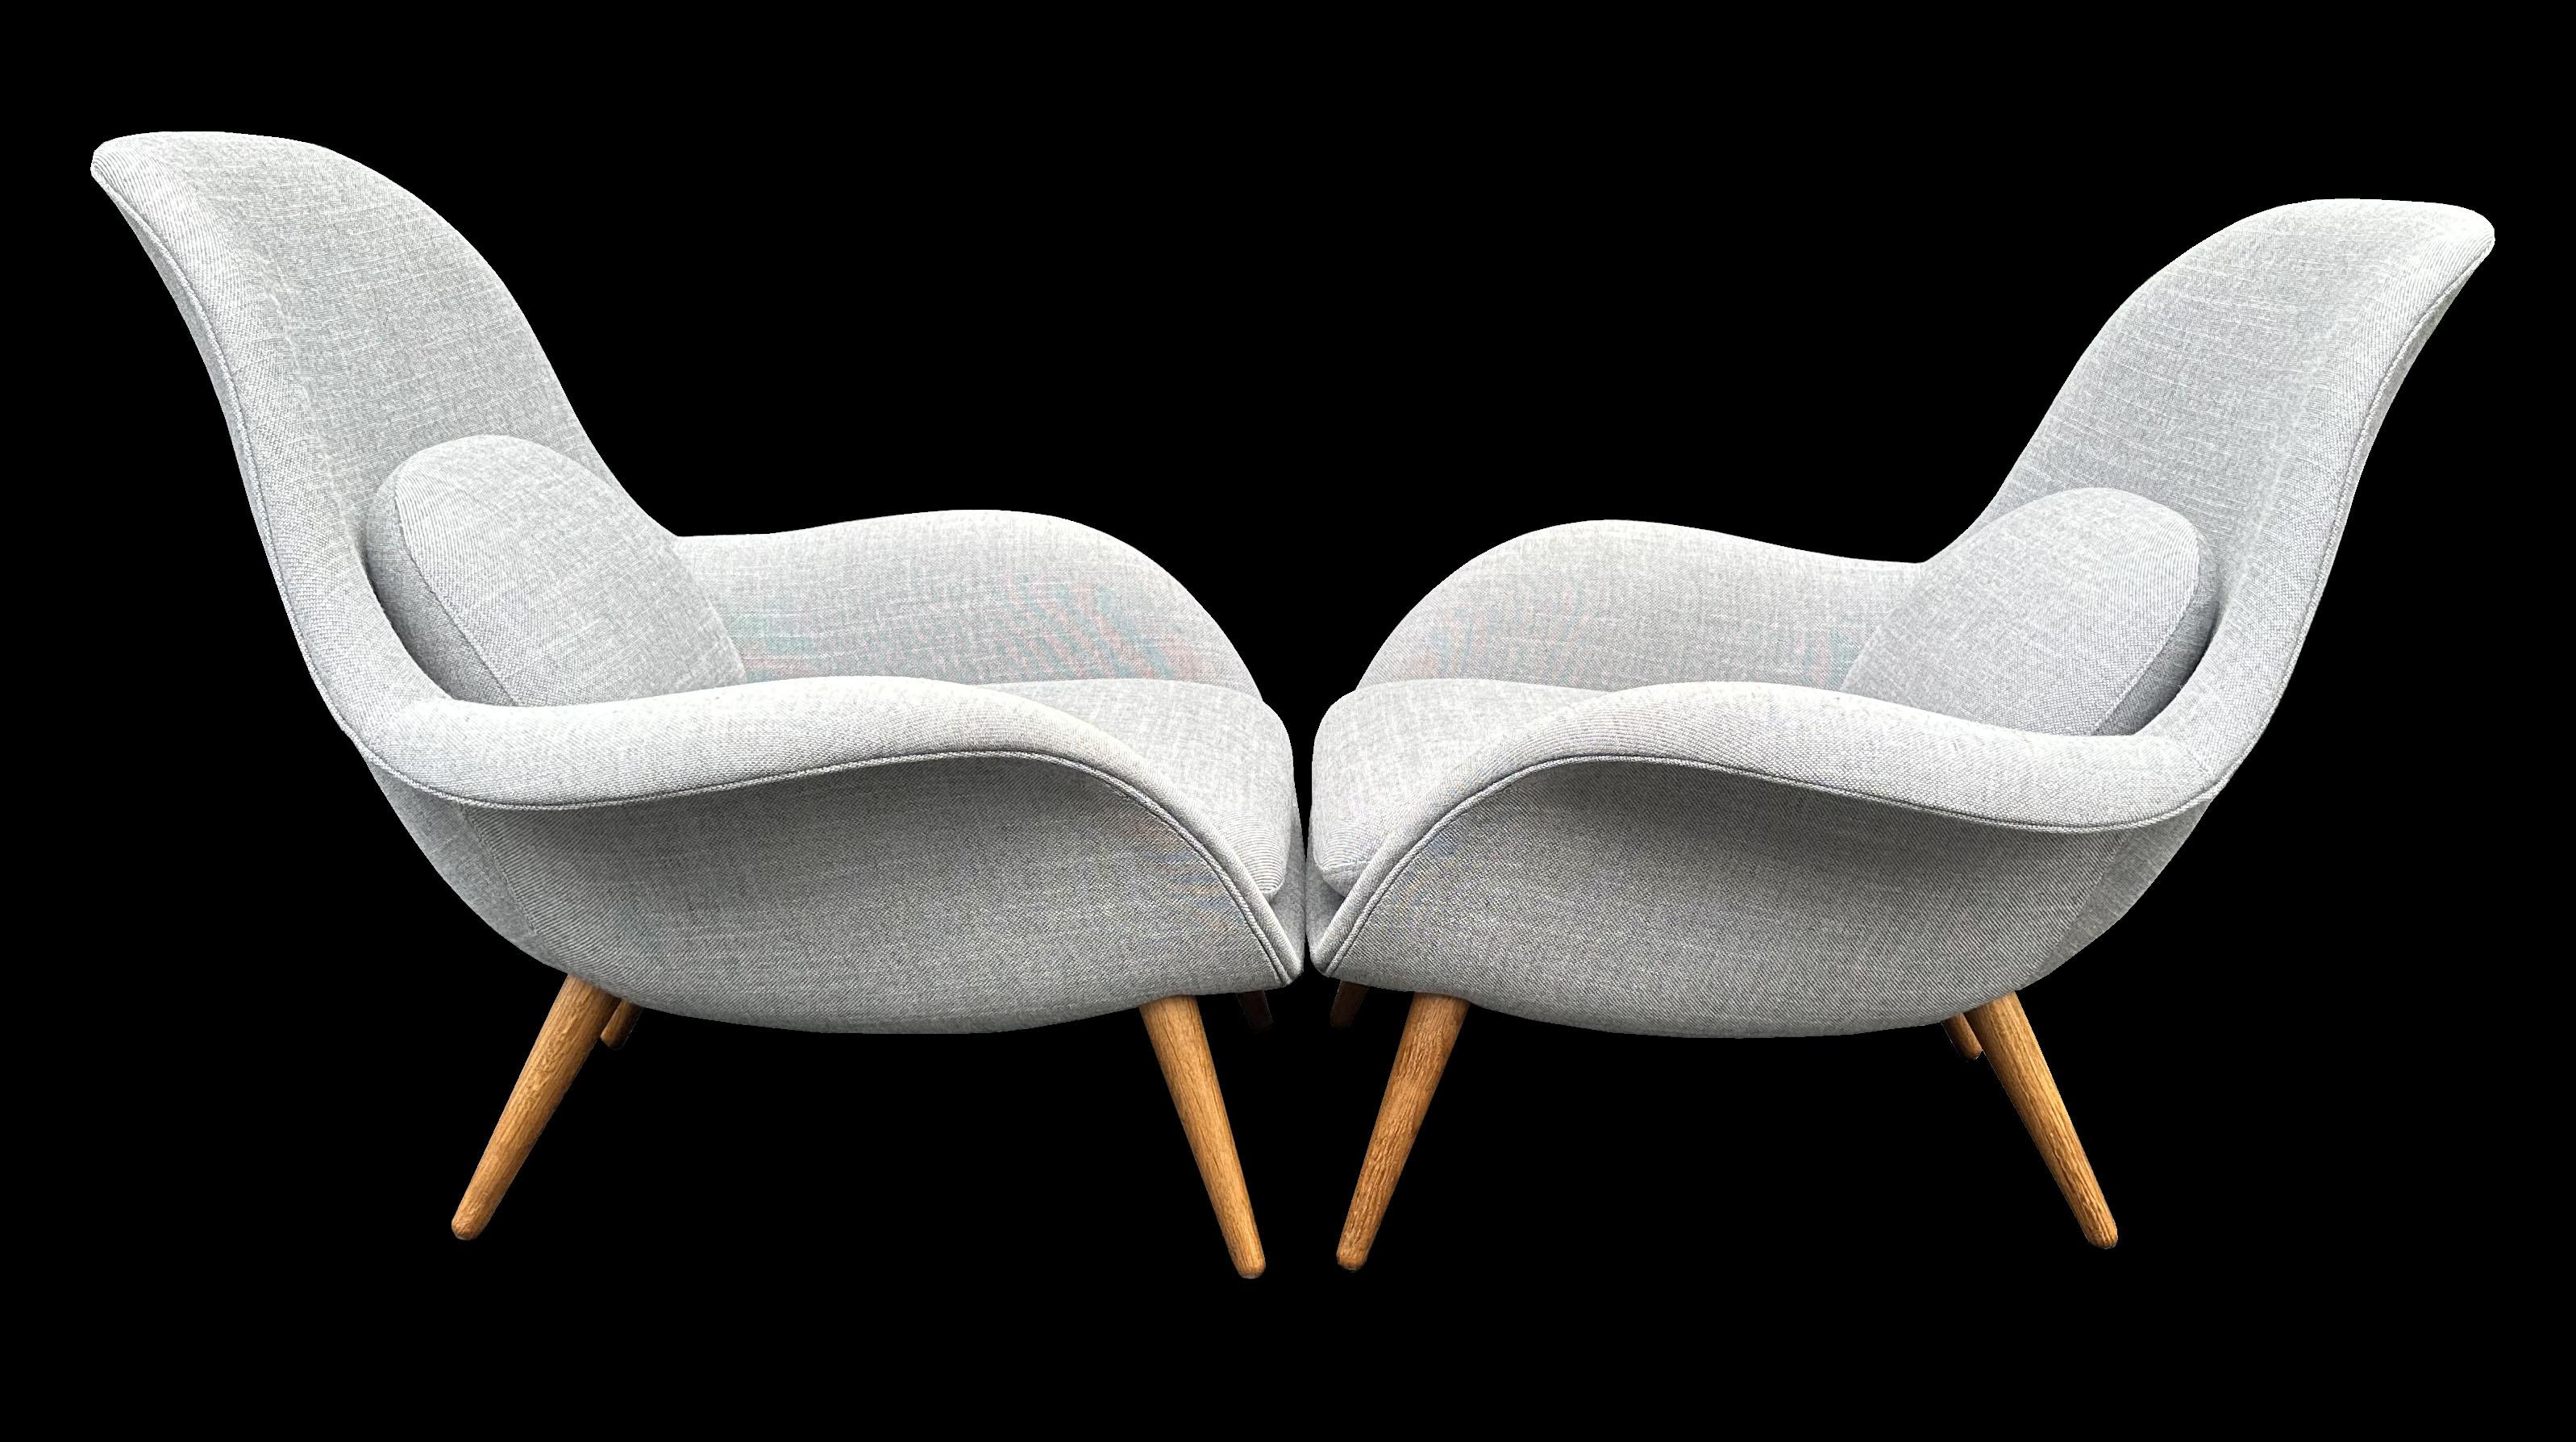 Wir haben 2 Paare dieser sehr coolen dänischen Lounge-Stühle in hellgrauem Originalstoff in sehr gutem Zustand, keine Abnutzung oder Flecken. Sie stehen auf massiven Eichenholzbeinen, die zerlegbar sind, um einen kostengünstigeren Versand zu